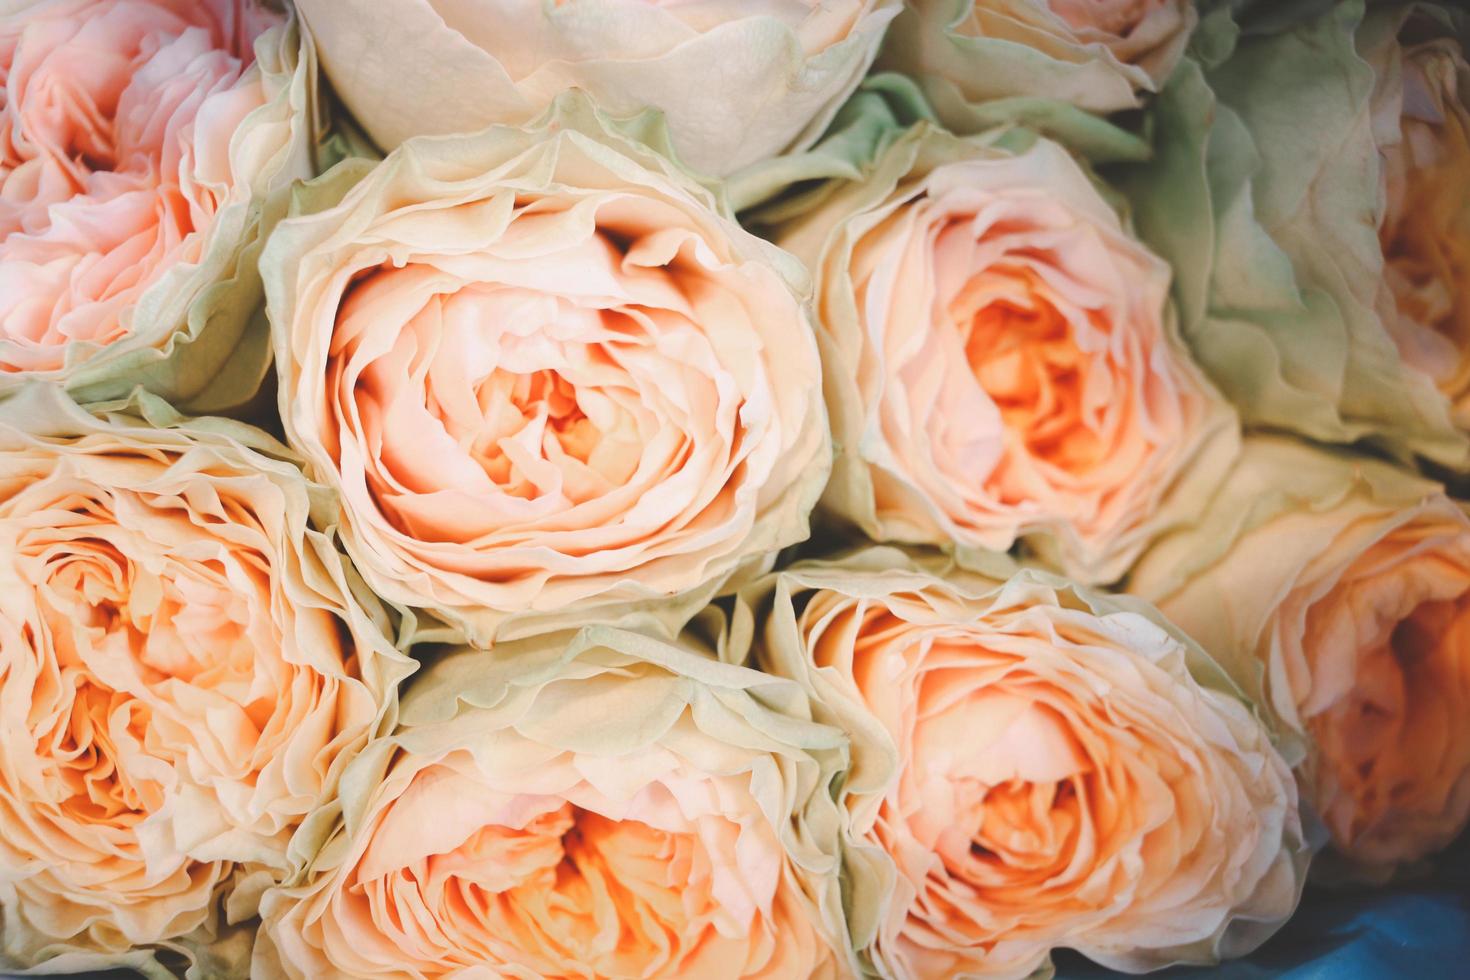 wit roze mooie roos verpakt in papier te koop bij bloemenmarkt, cadeau op valentijnsdag. foto